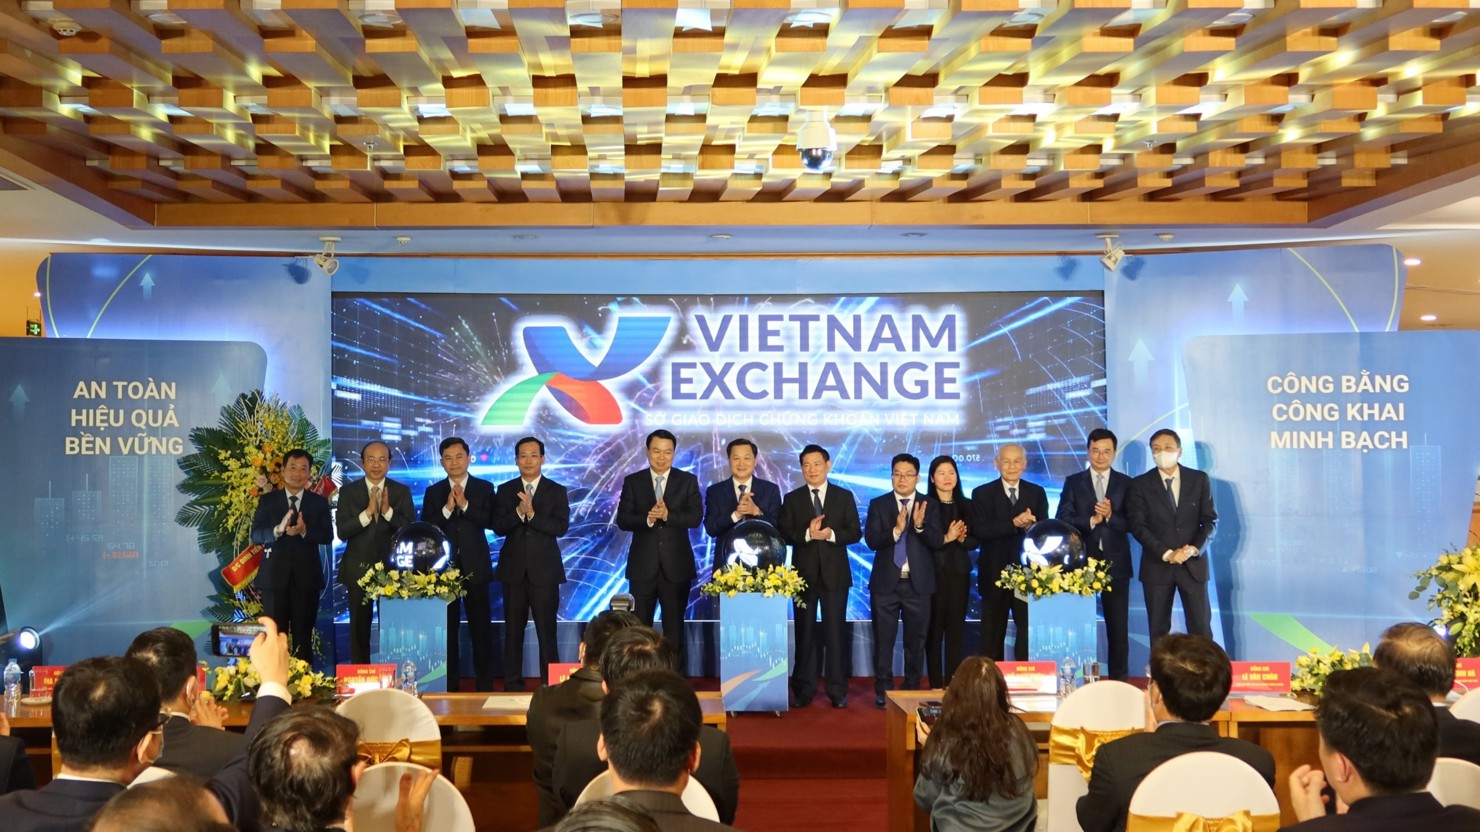 Lễ đón nhận quyết định thành lập Sở Giao dịch Chứng khoán Việt Nam (ngày 11/12/2021)